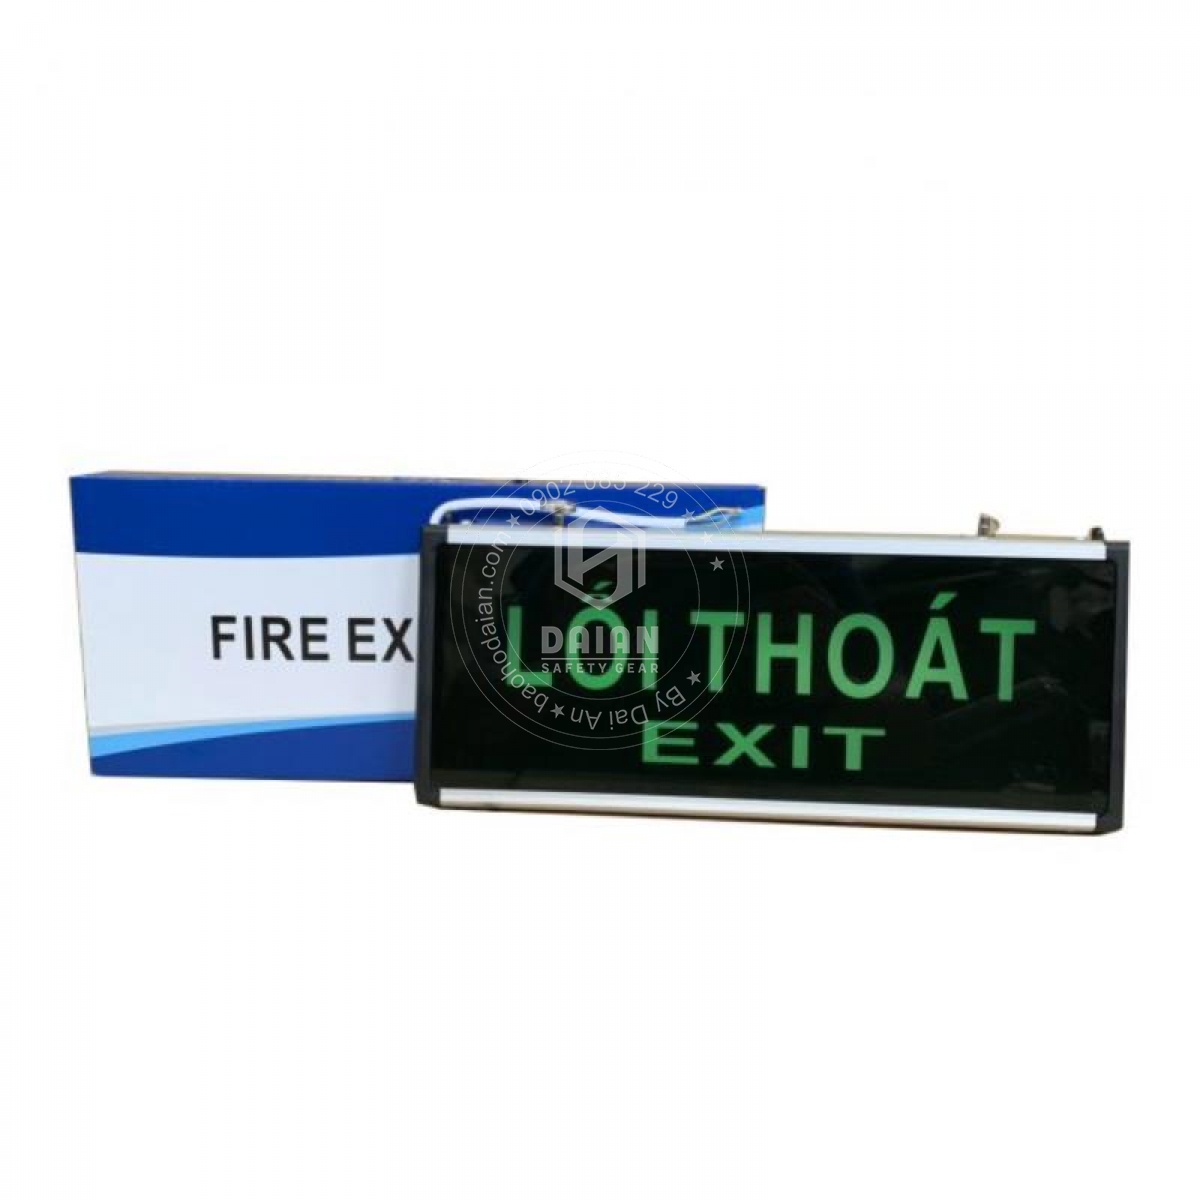 den-exit-thoat-hiem-aed819-exit-loi-thoat